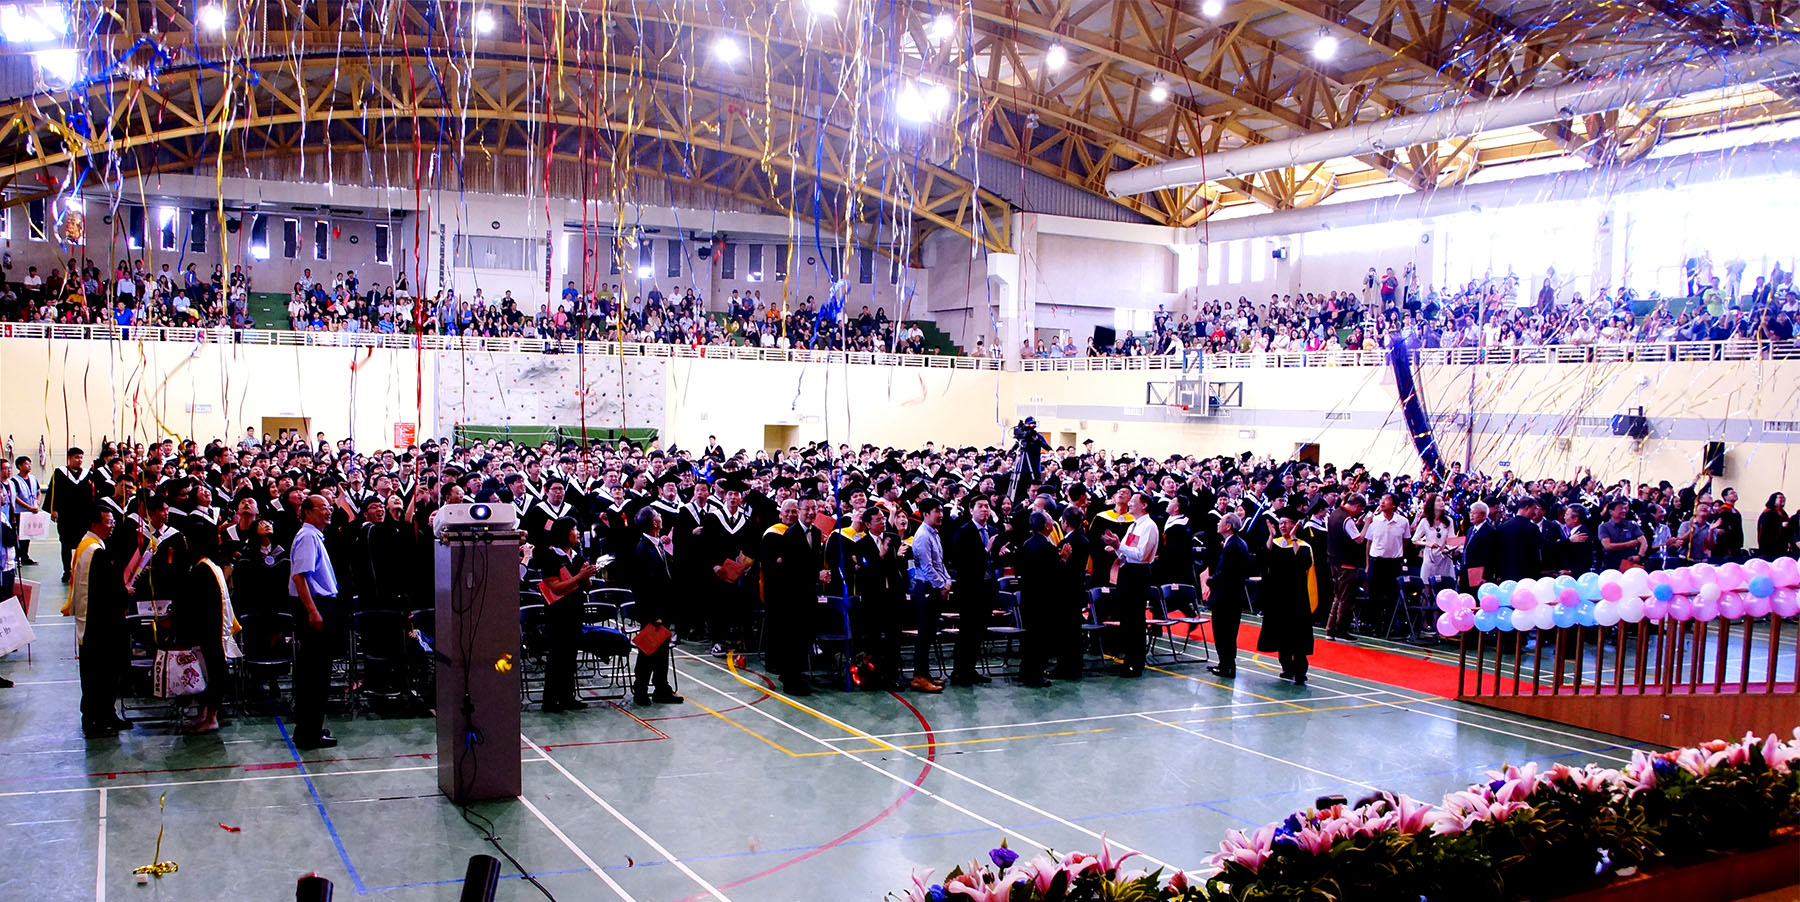 聖約翰科技大學舉行107學年度畢業典禮，所有畢業生一一上台，由師長們在舞台上為畢業生進行撥穗及授證儀式，場面盛大溫馨